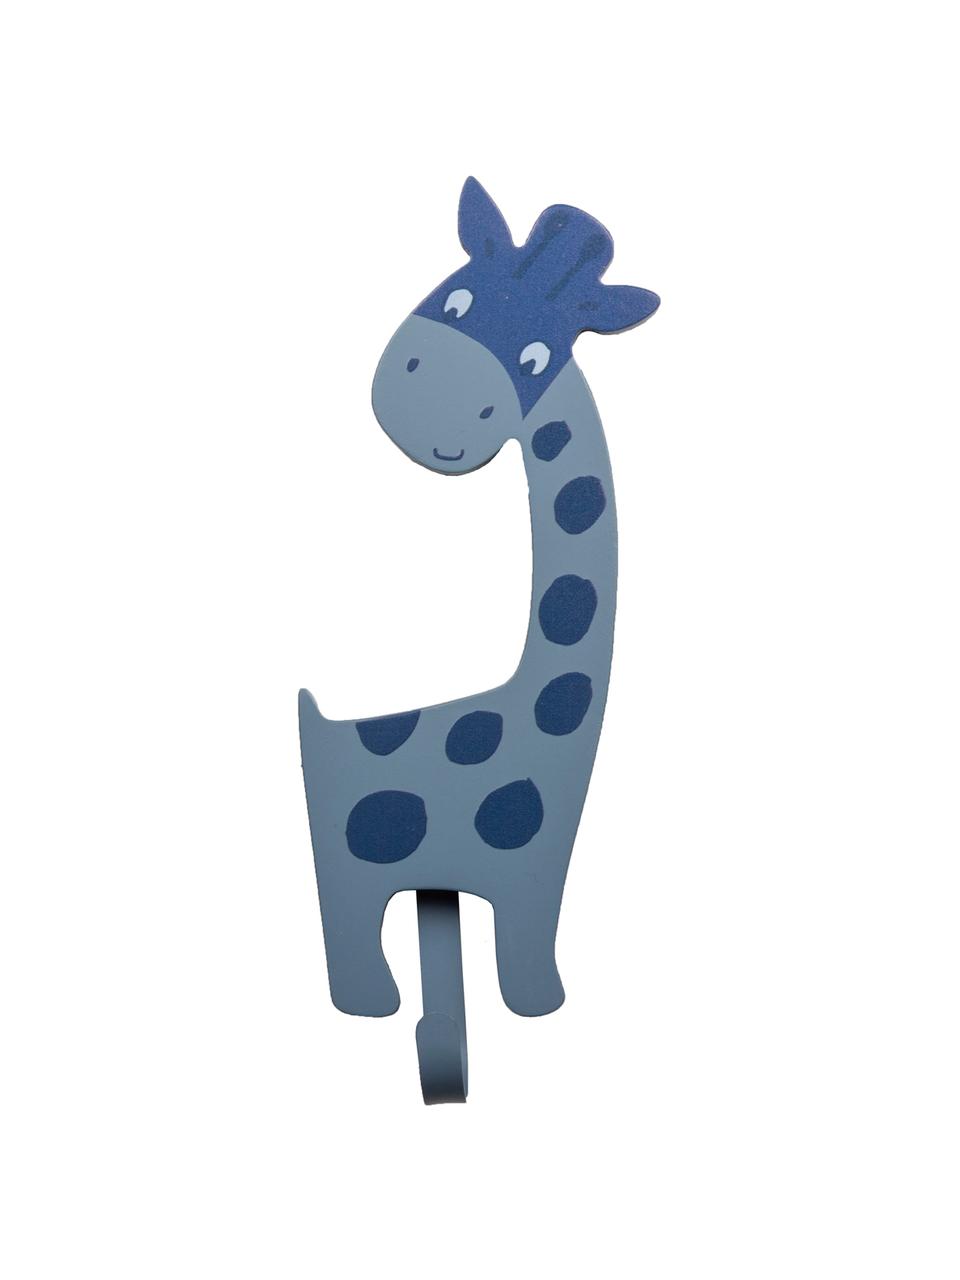 Nástěnný háček Giraffa, MDF deska (dřevovláknitá deska střední hustoty), kov, Modrá, Š 9 cm, V 23 cm